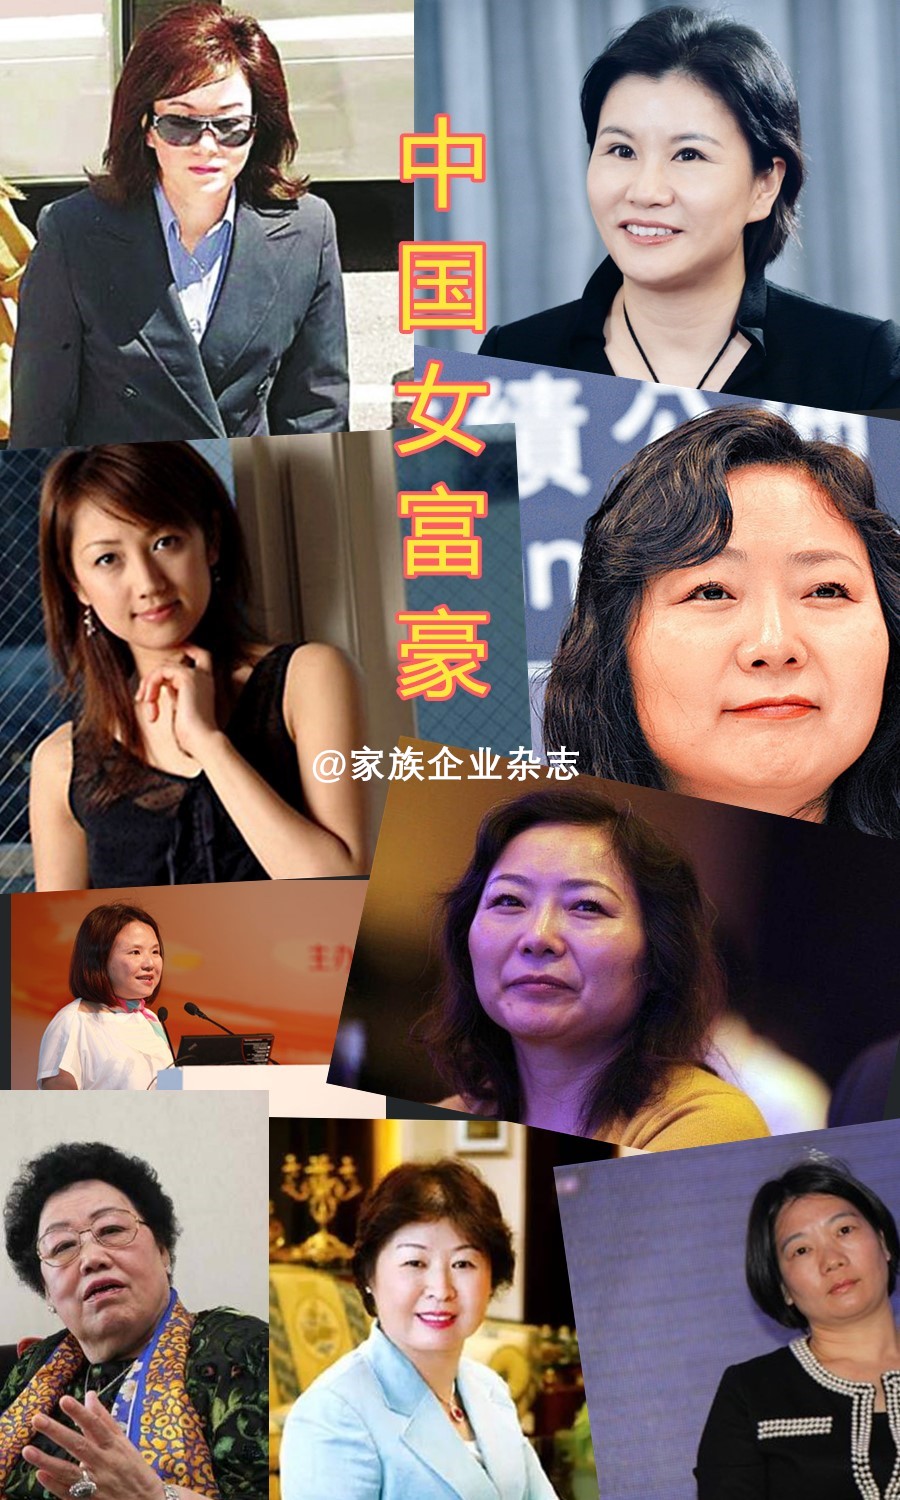 2018中国女富豪榜出炉:36岁杨惠妍比64岁董明珠多出一个顺丰王卫